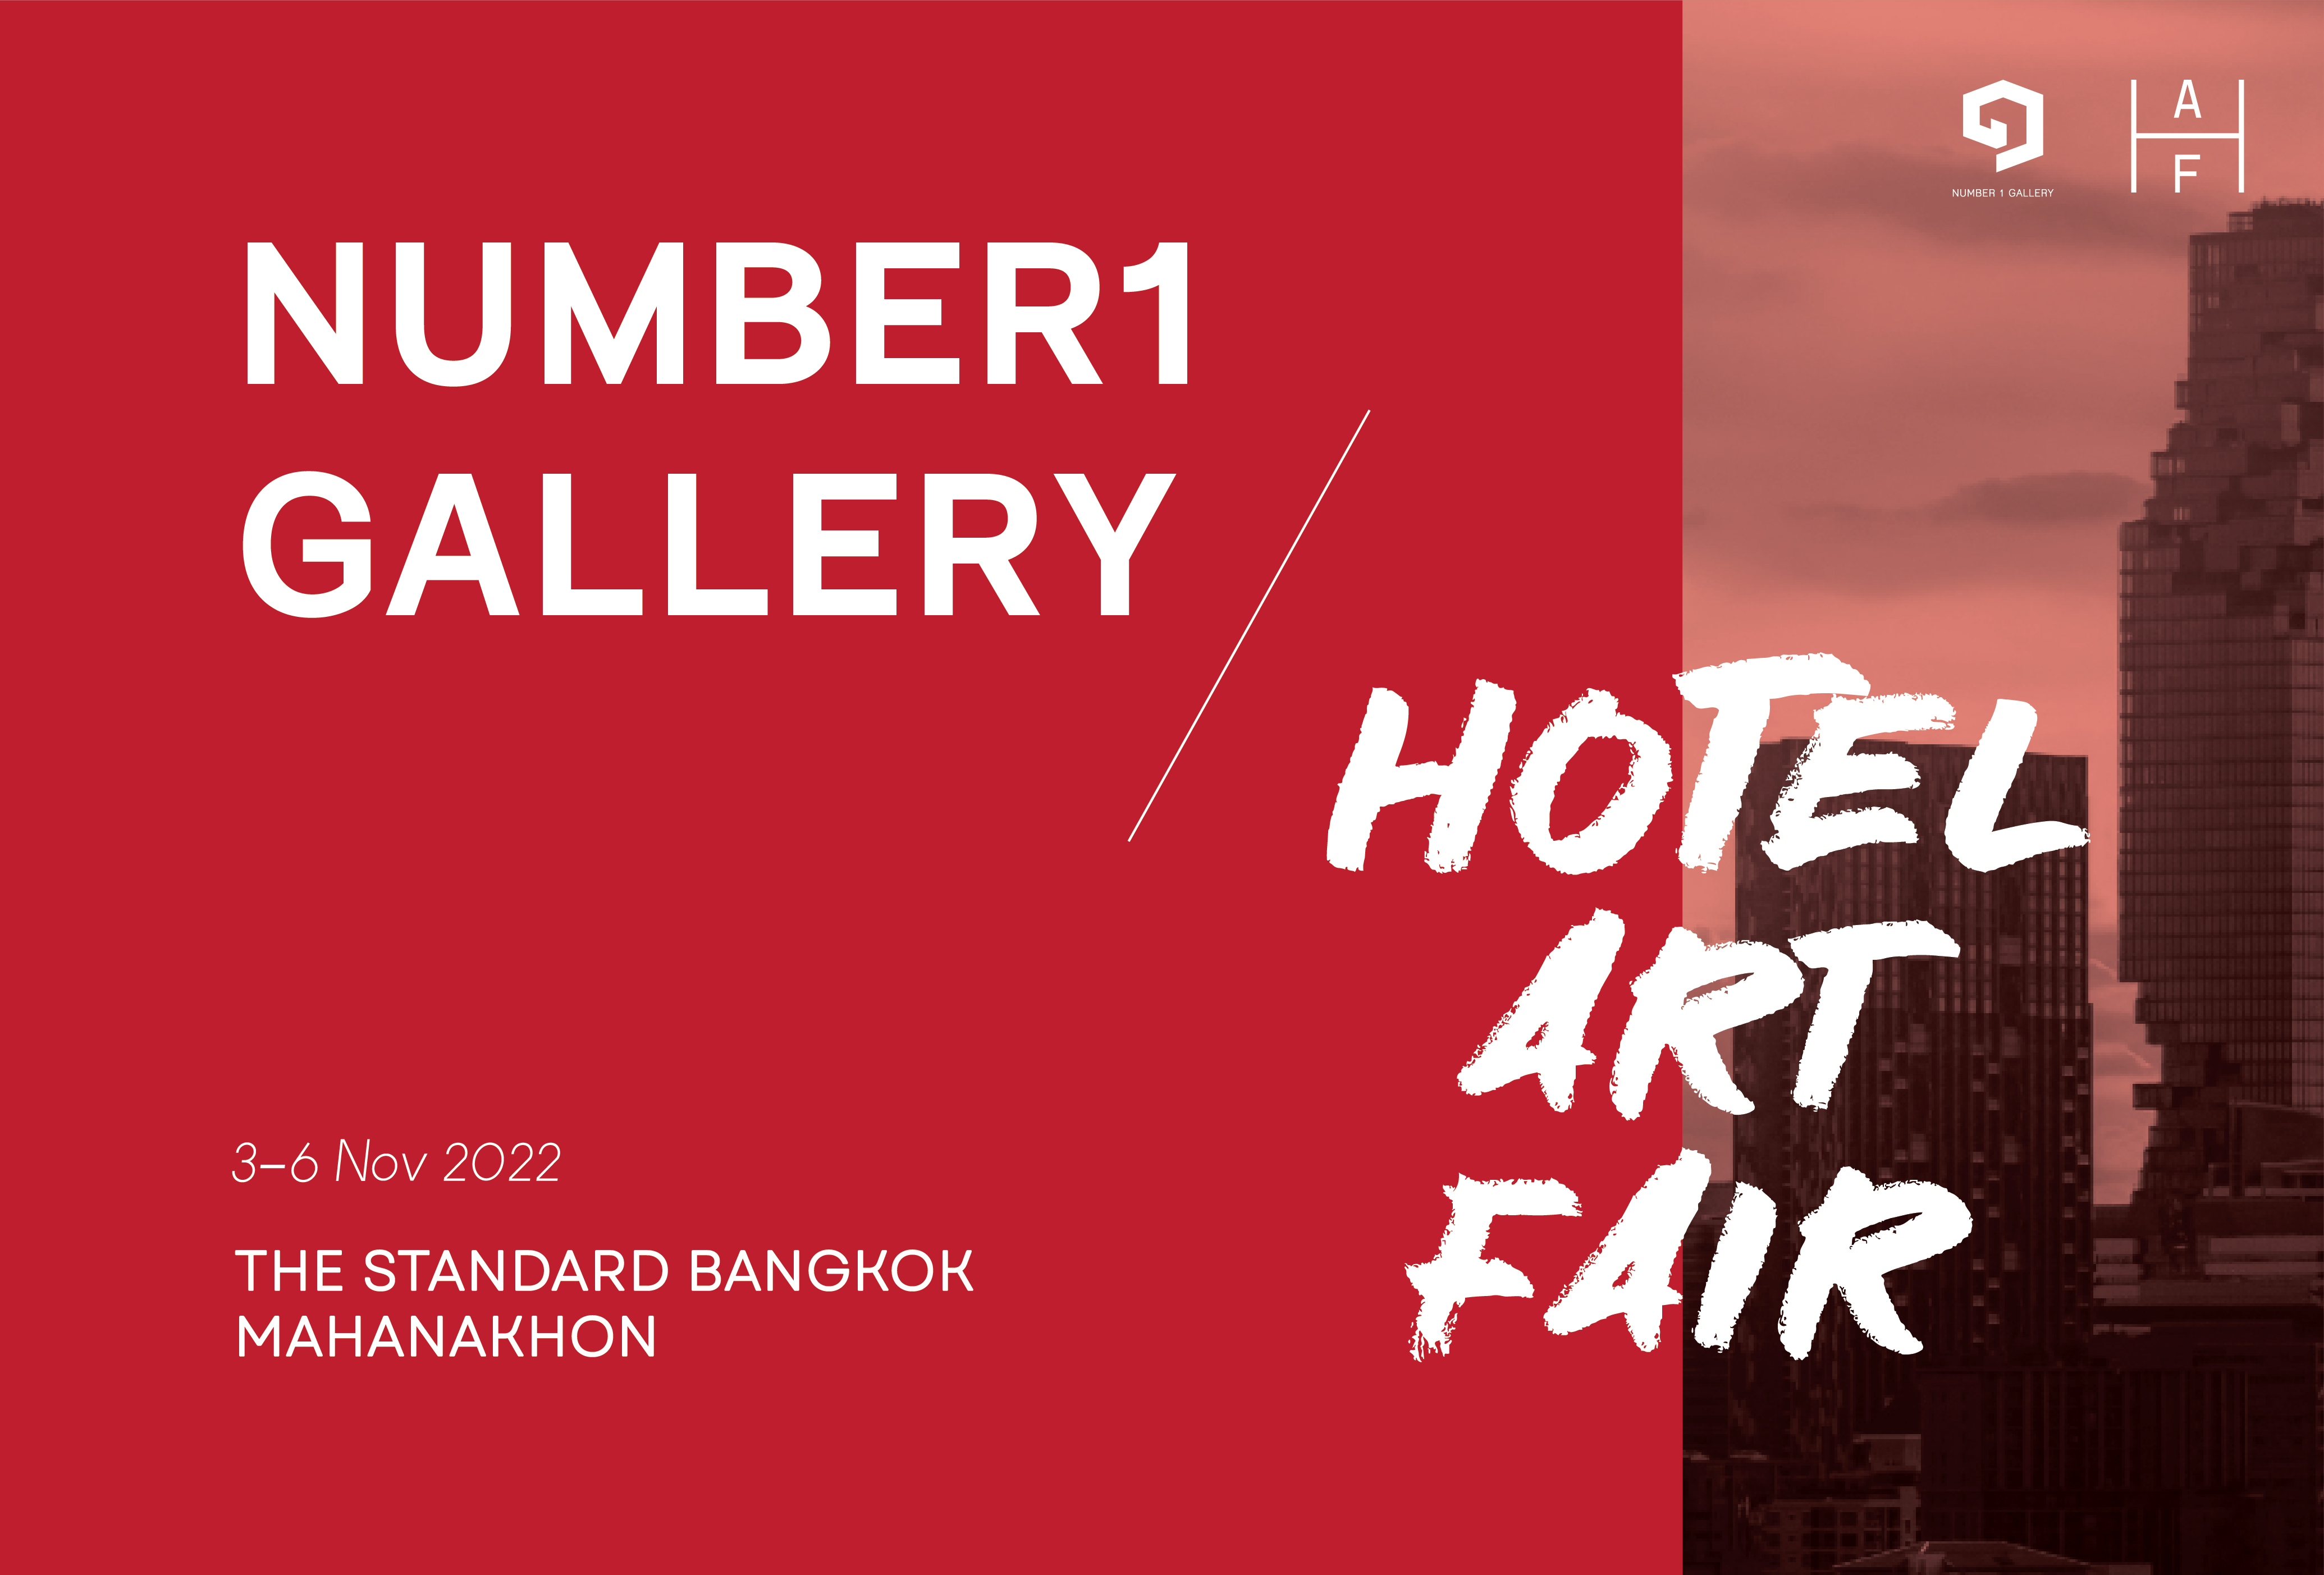 Hotel Art Fair 2022